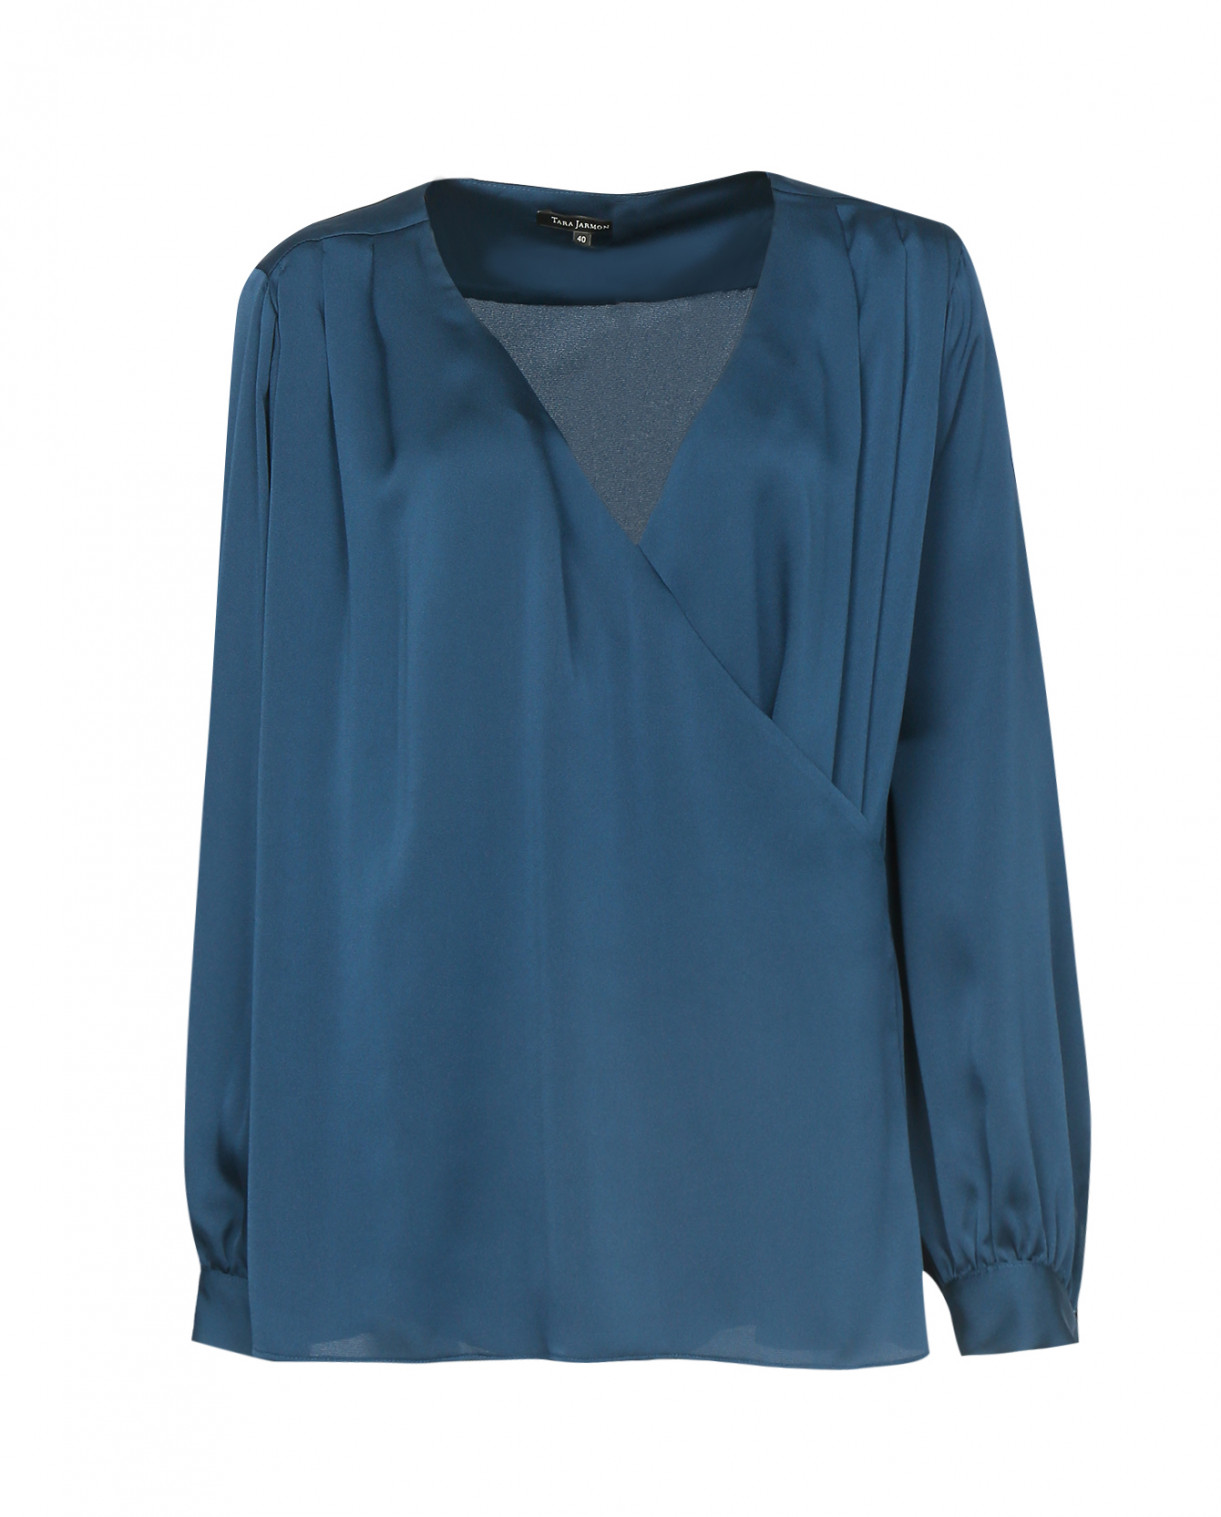 Блуза с запахом Tara Jarmon  –  Общий вид  – Цвет:  Синий